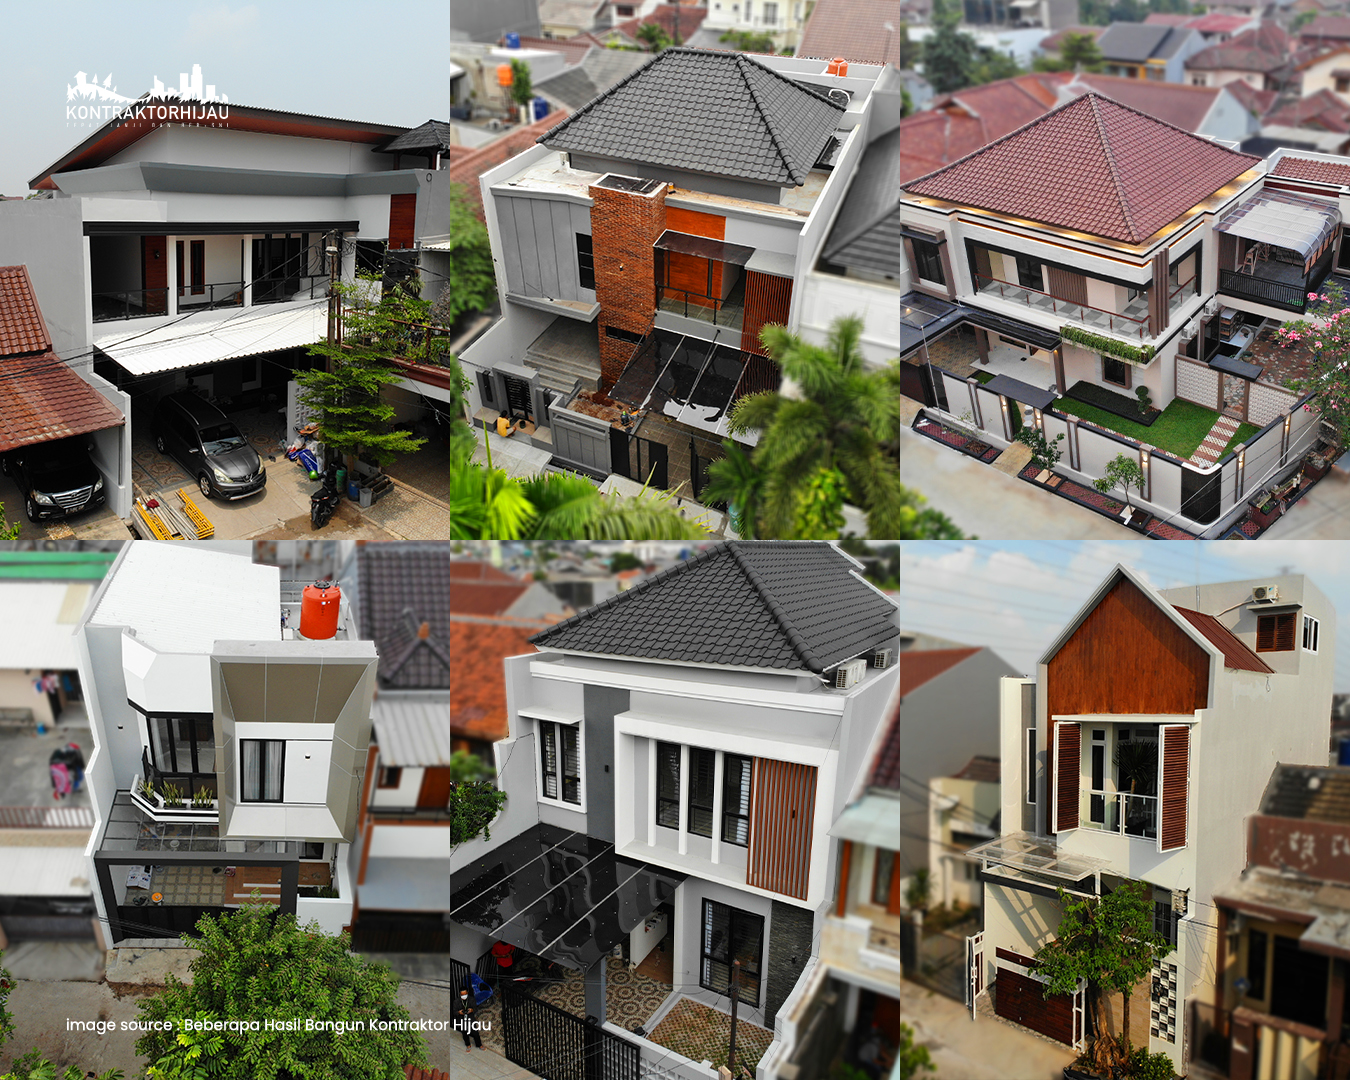 Beberapa Contoh Hasil Bangun Rumah Pakai Arsitek Kontraktor Hijau 